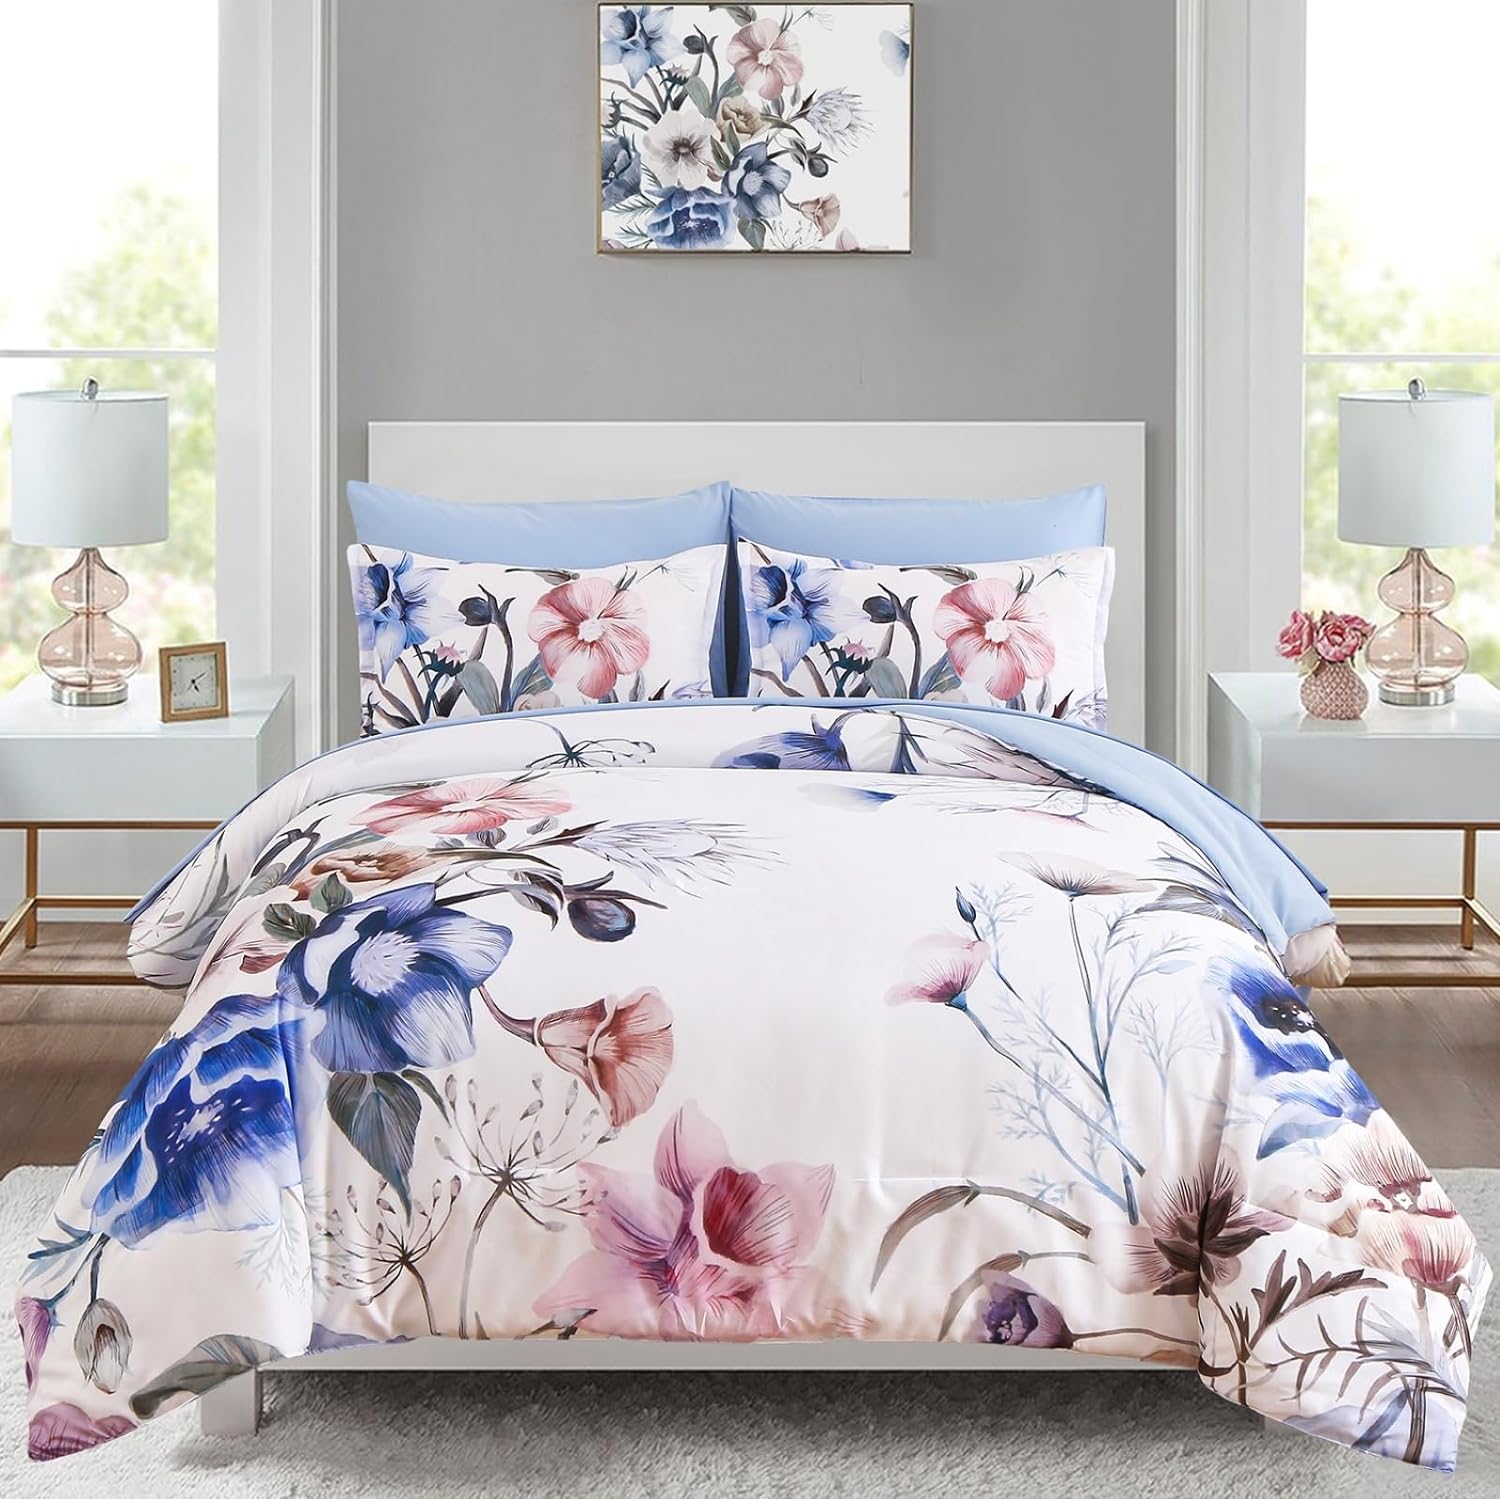 Luxudecor Floral Comforter Set Queen Size 7 Piece, Green Flower Bed in a  Bag, Elegant Floral Comforter with Sheet Set, Soft Microfiber Bedding Set  for